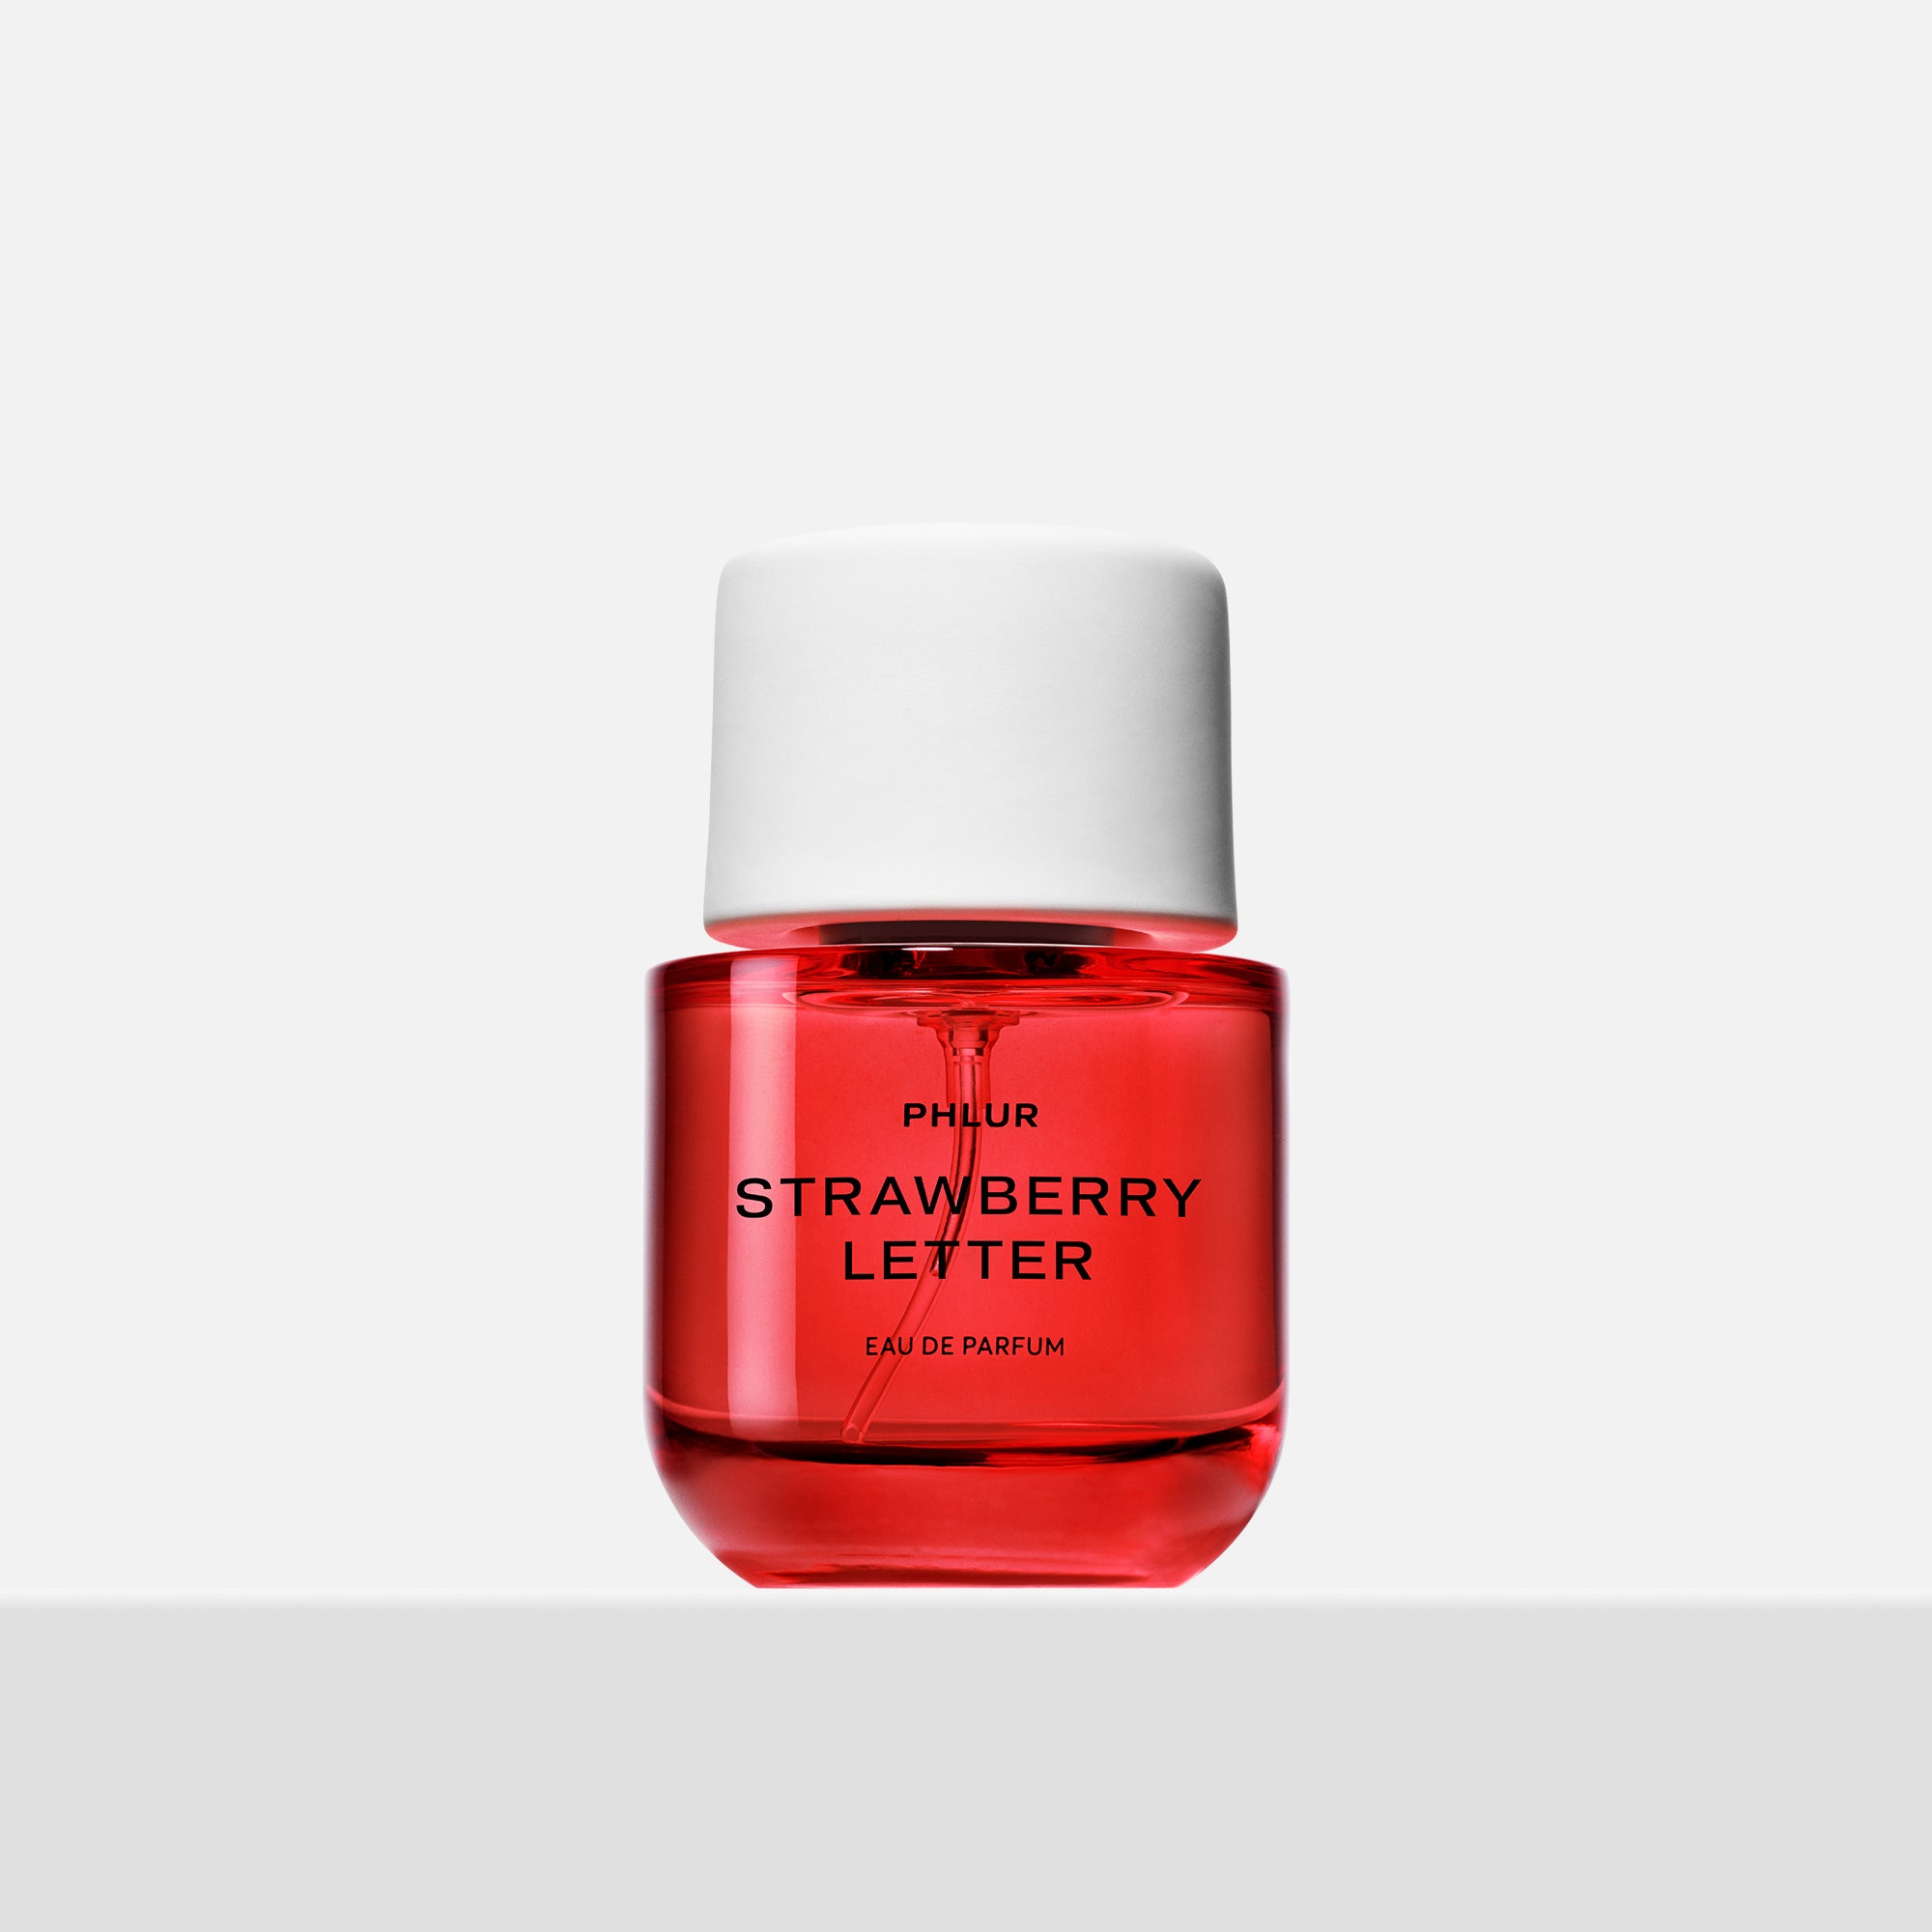 Strawberry Letter Perfume - Full Size Fragrance - Phlur